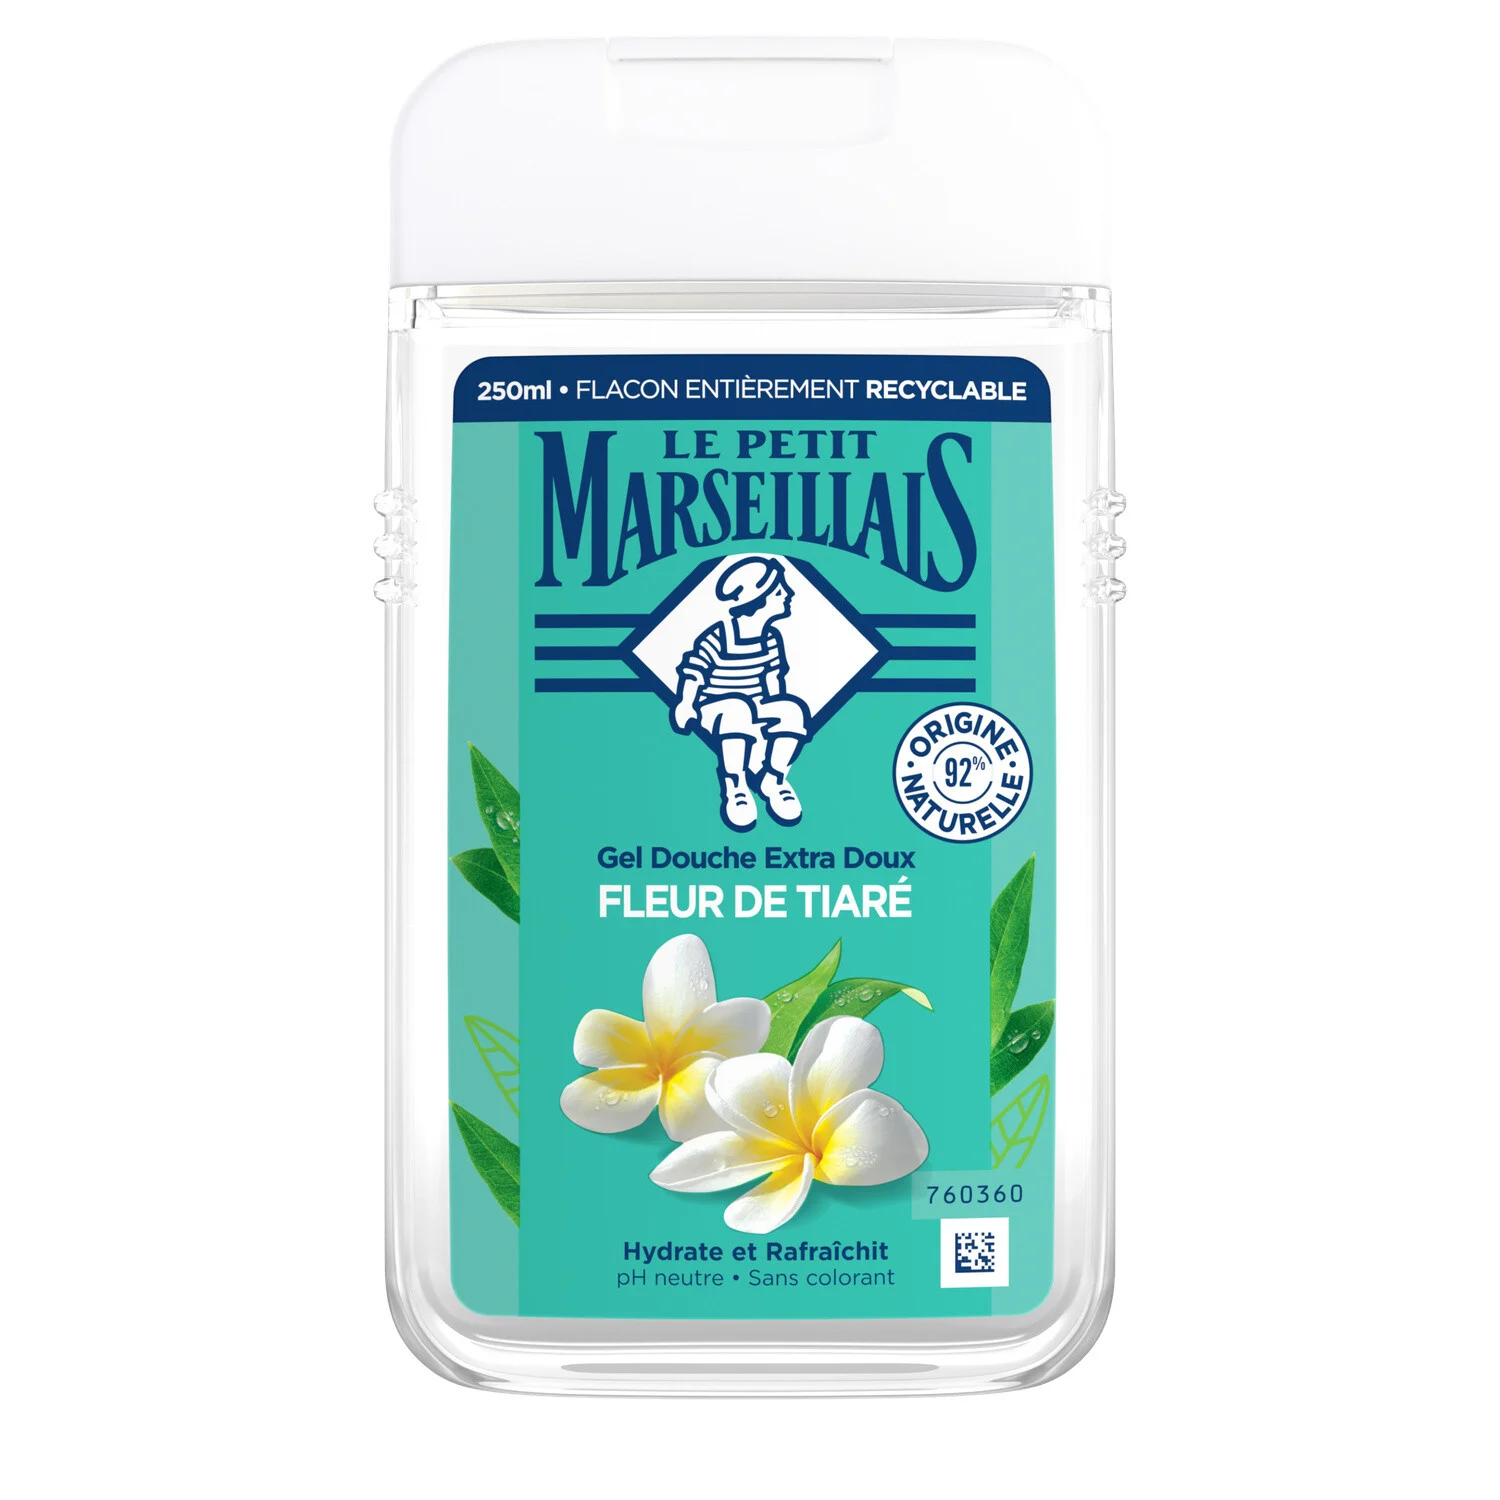 Le Petit Marseillais Shower gel Tiare Flower 250ml